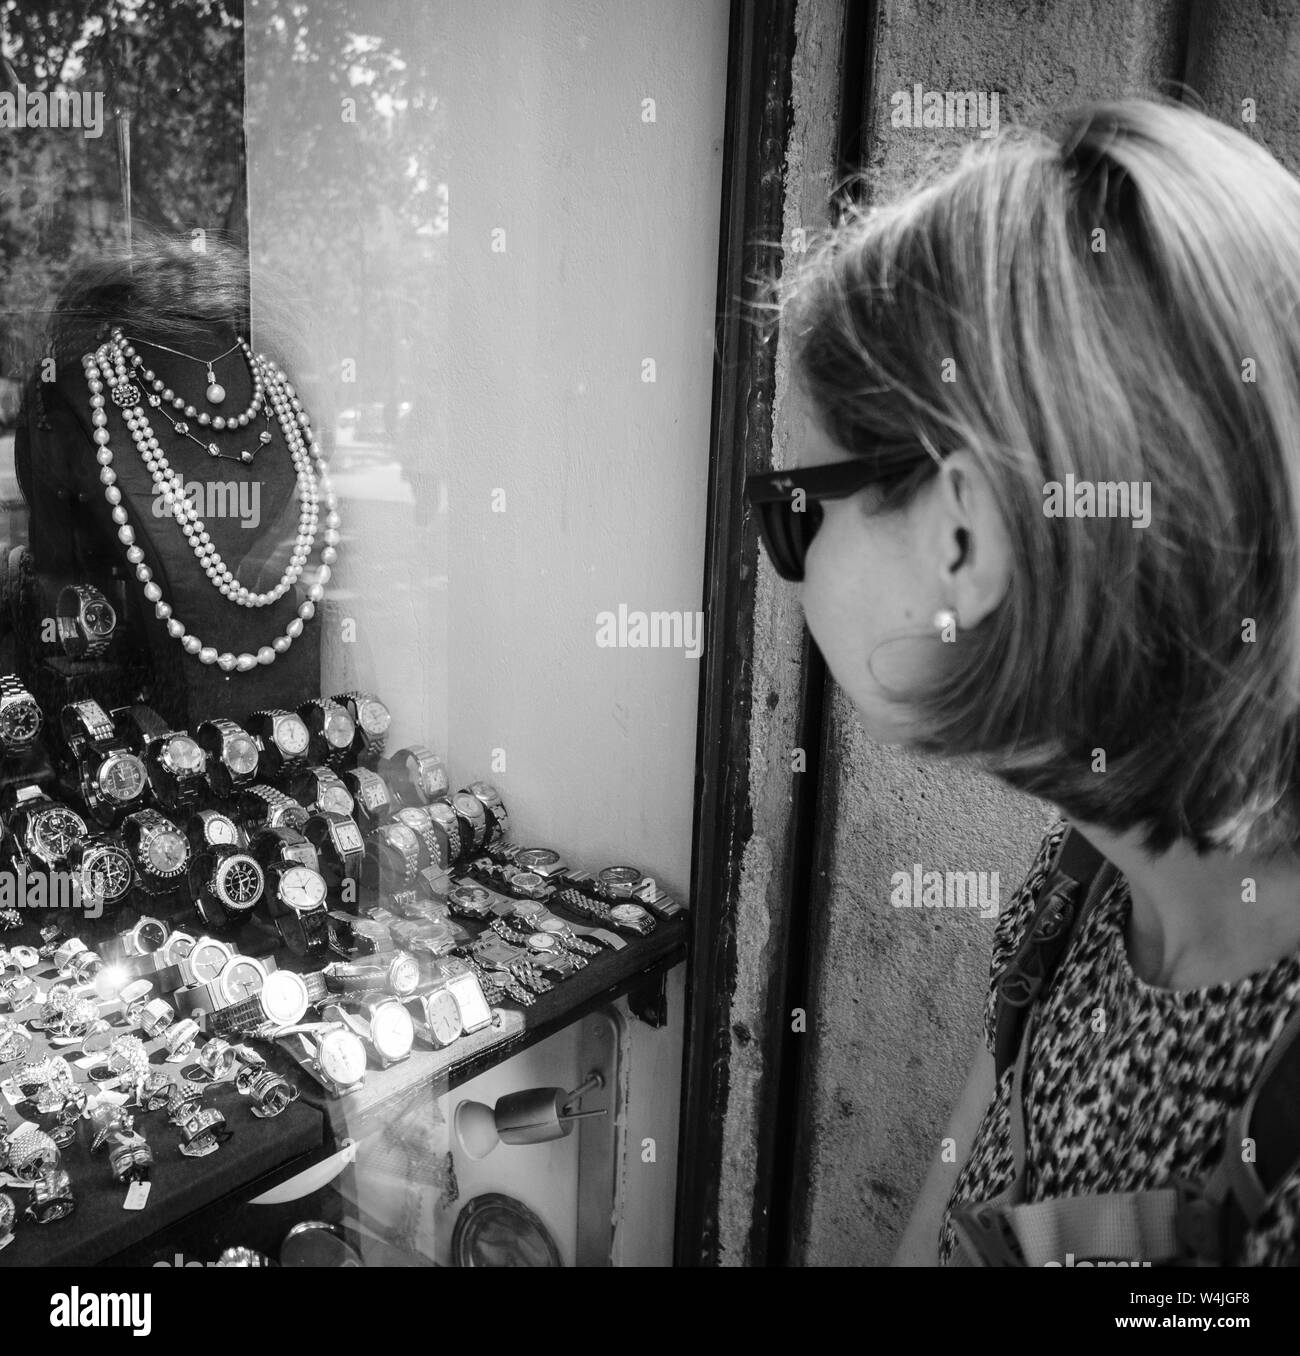 Barcelona, España - Jun 1, 2018: turista elegante mujer mirando al frente  la ventana de exhibición en el centro de joyería en ciudad española  eligiendo anillos, aretes, broches, perlas y diamantes imagen